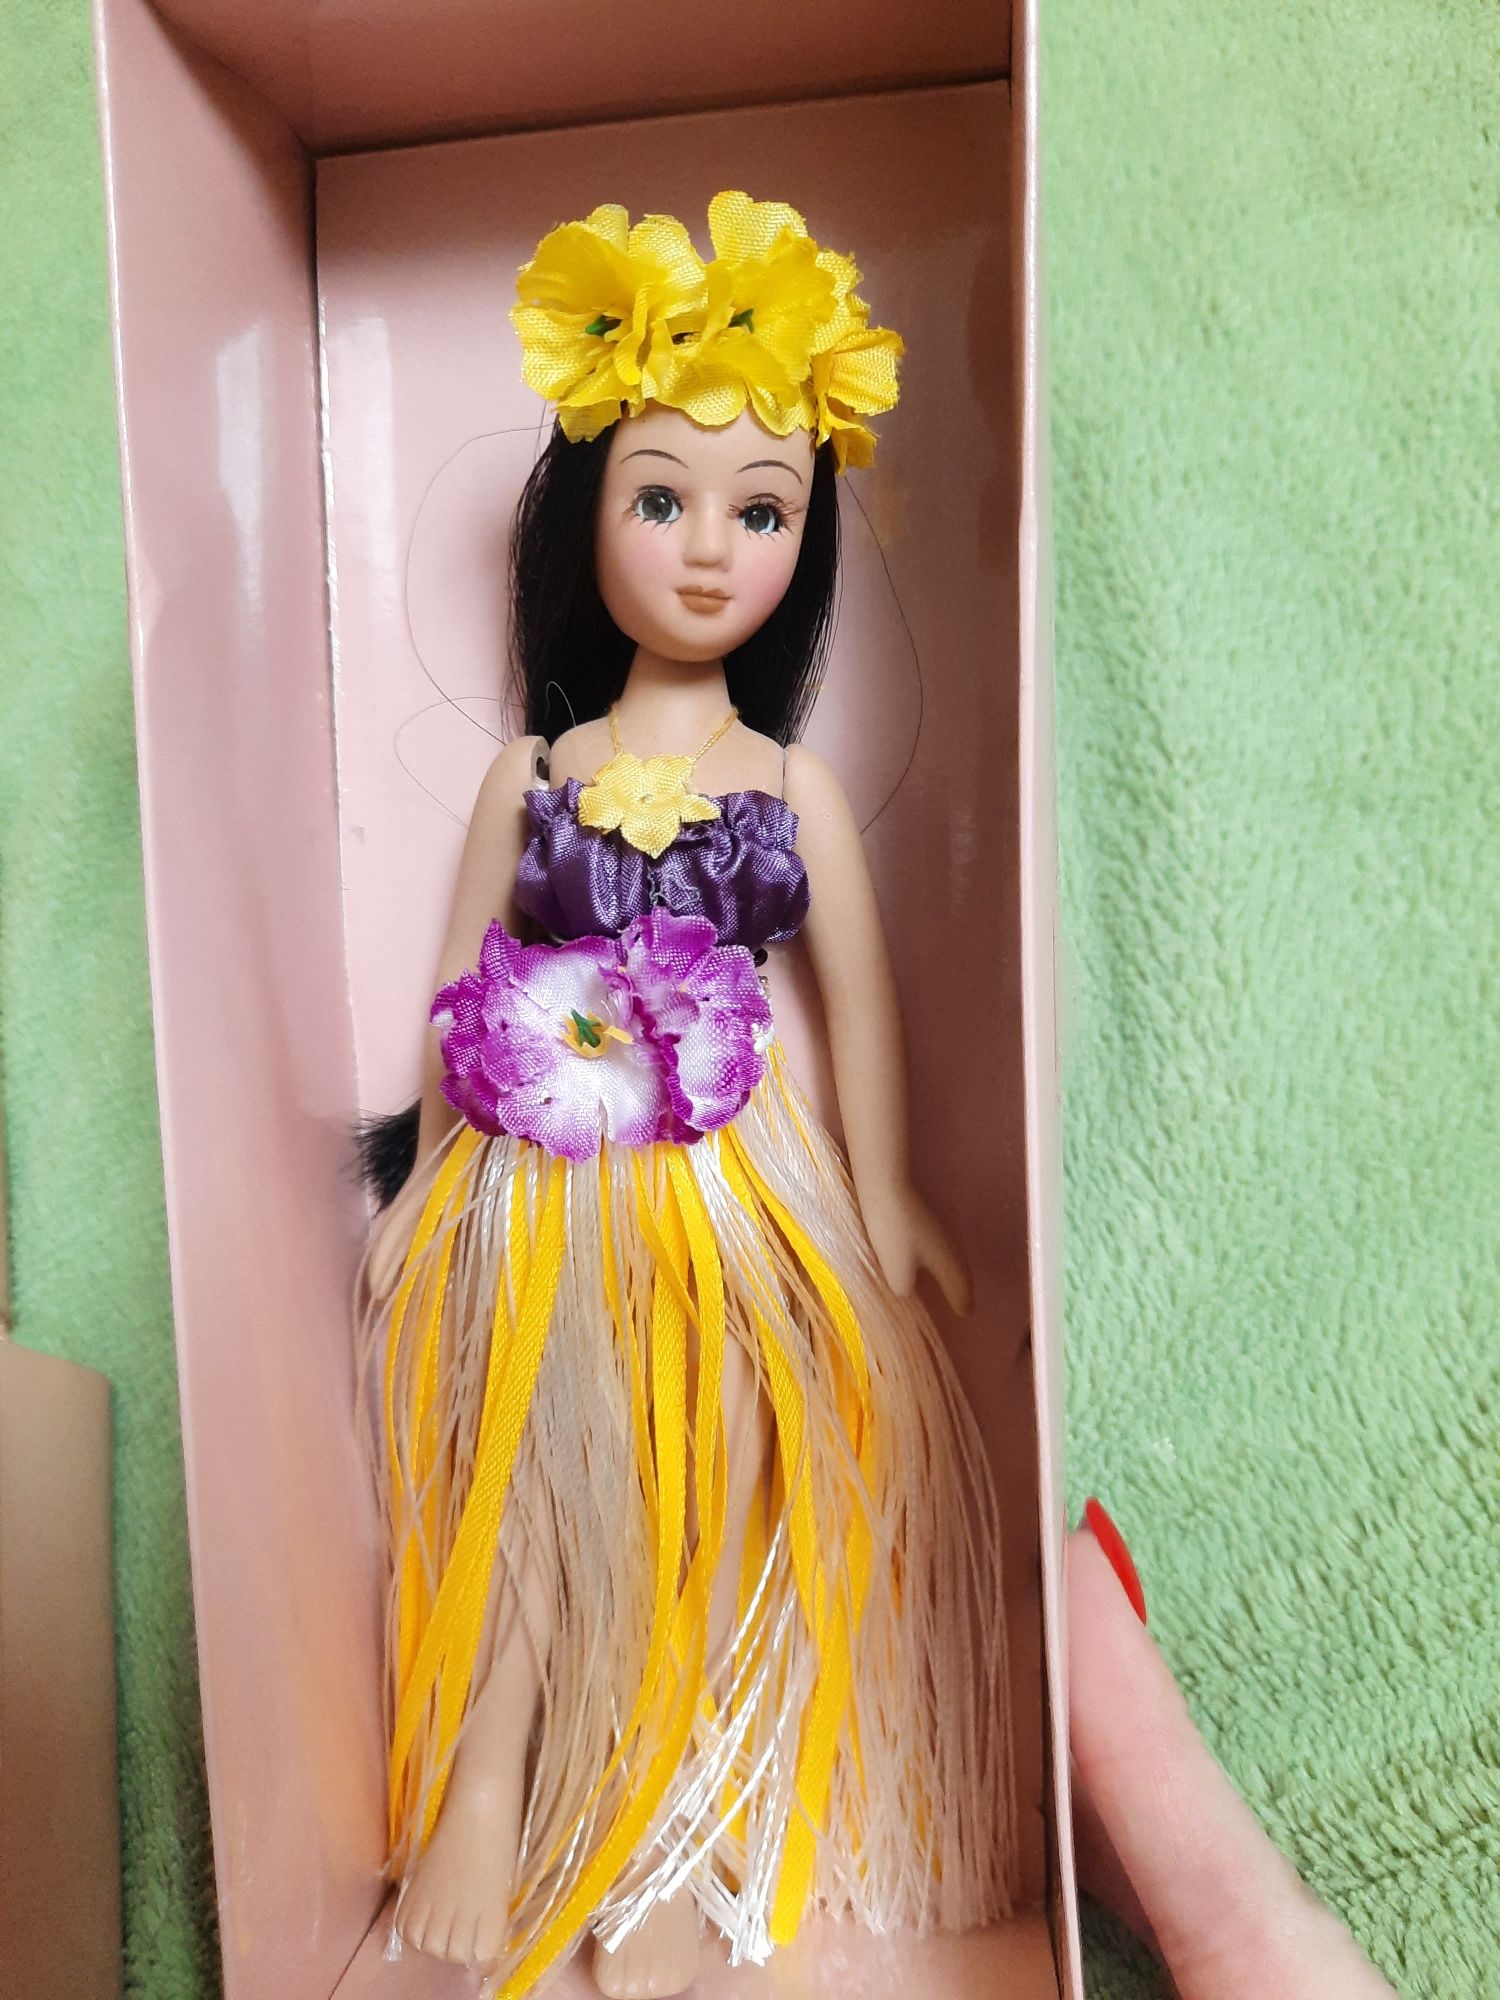 Продам коллекционные куклы фарфоровые.